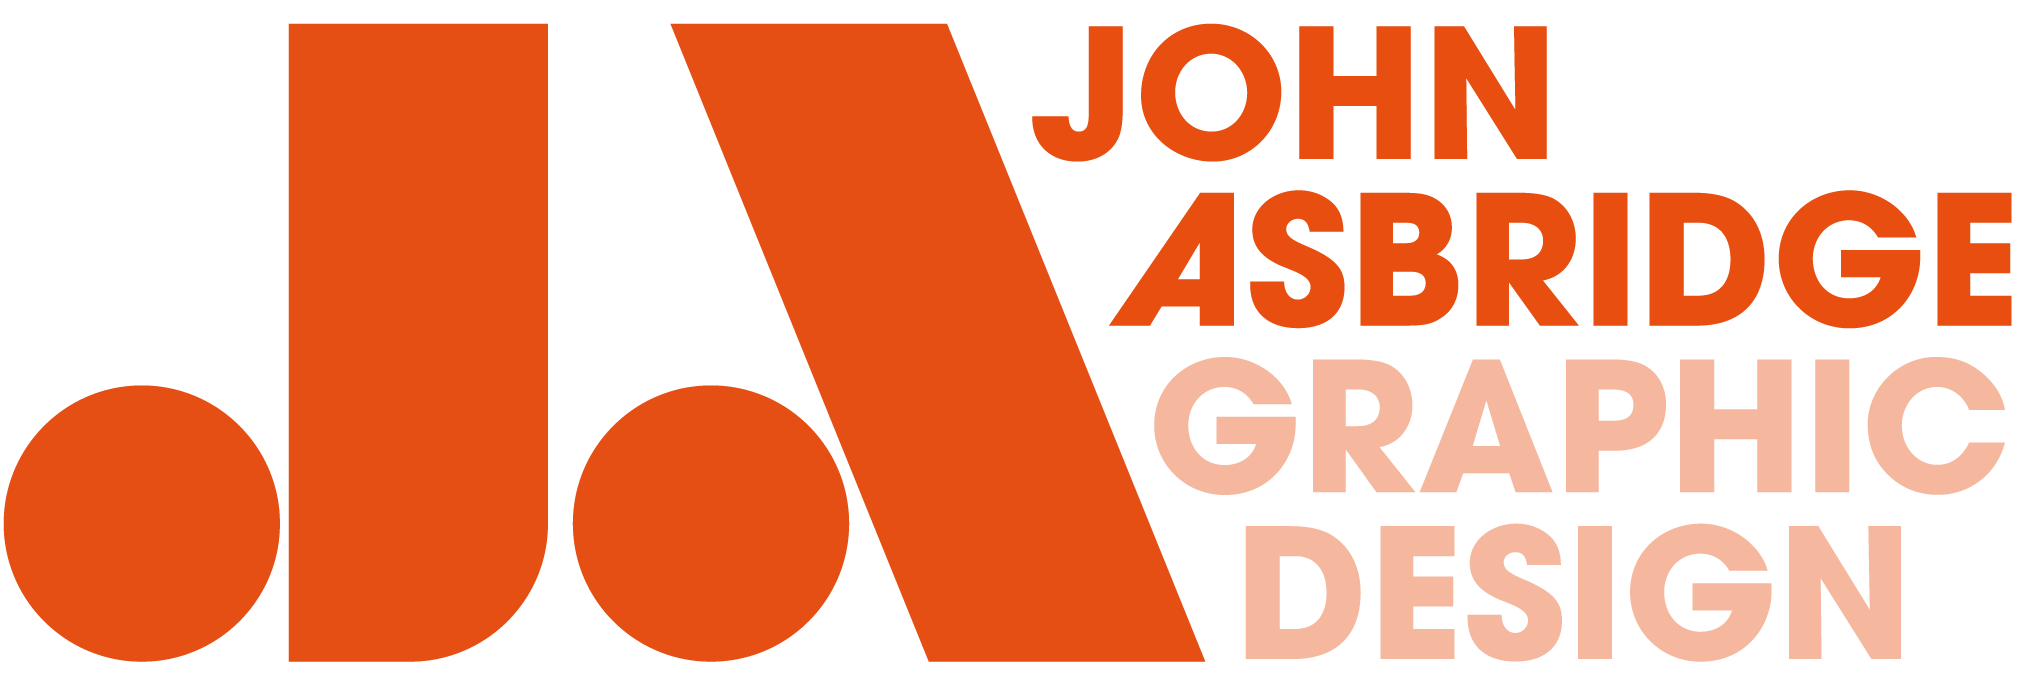 John Asbridge